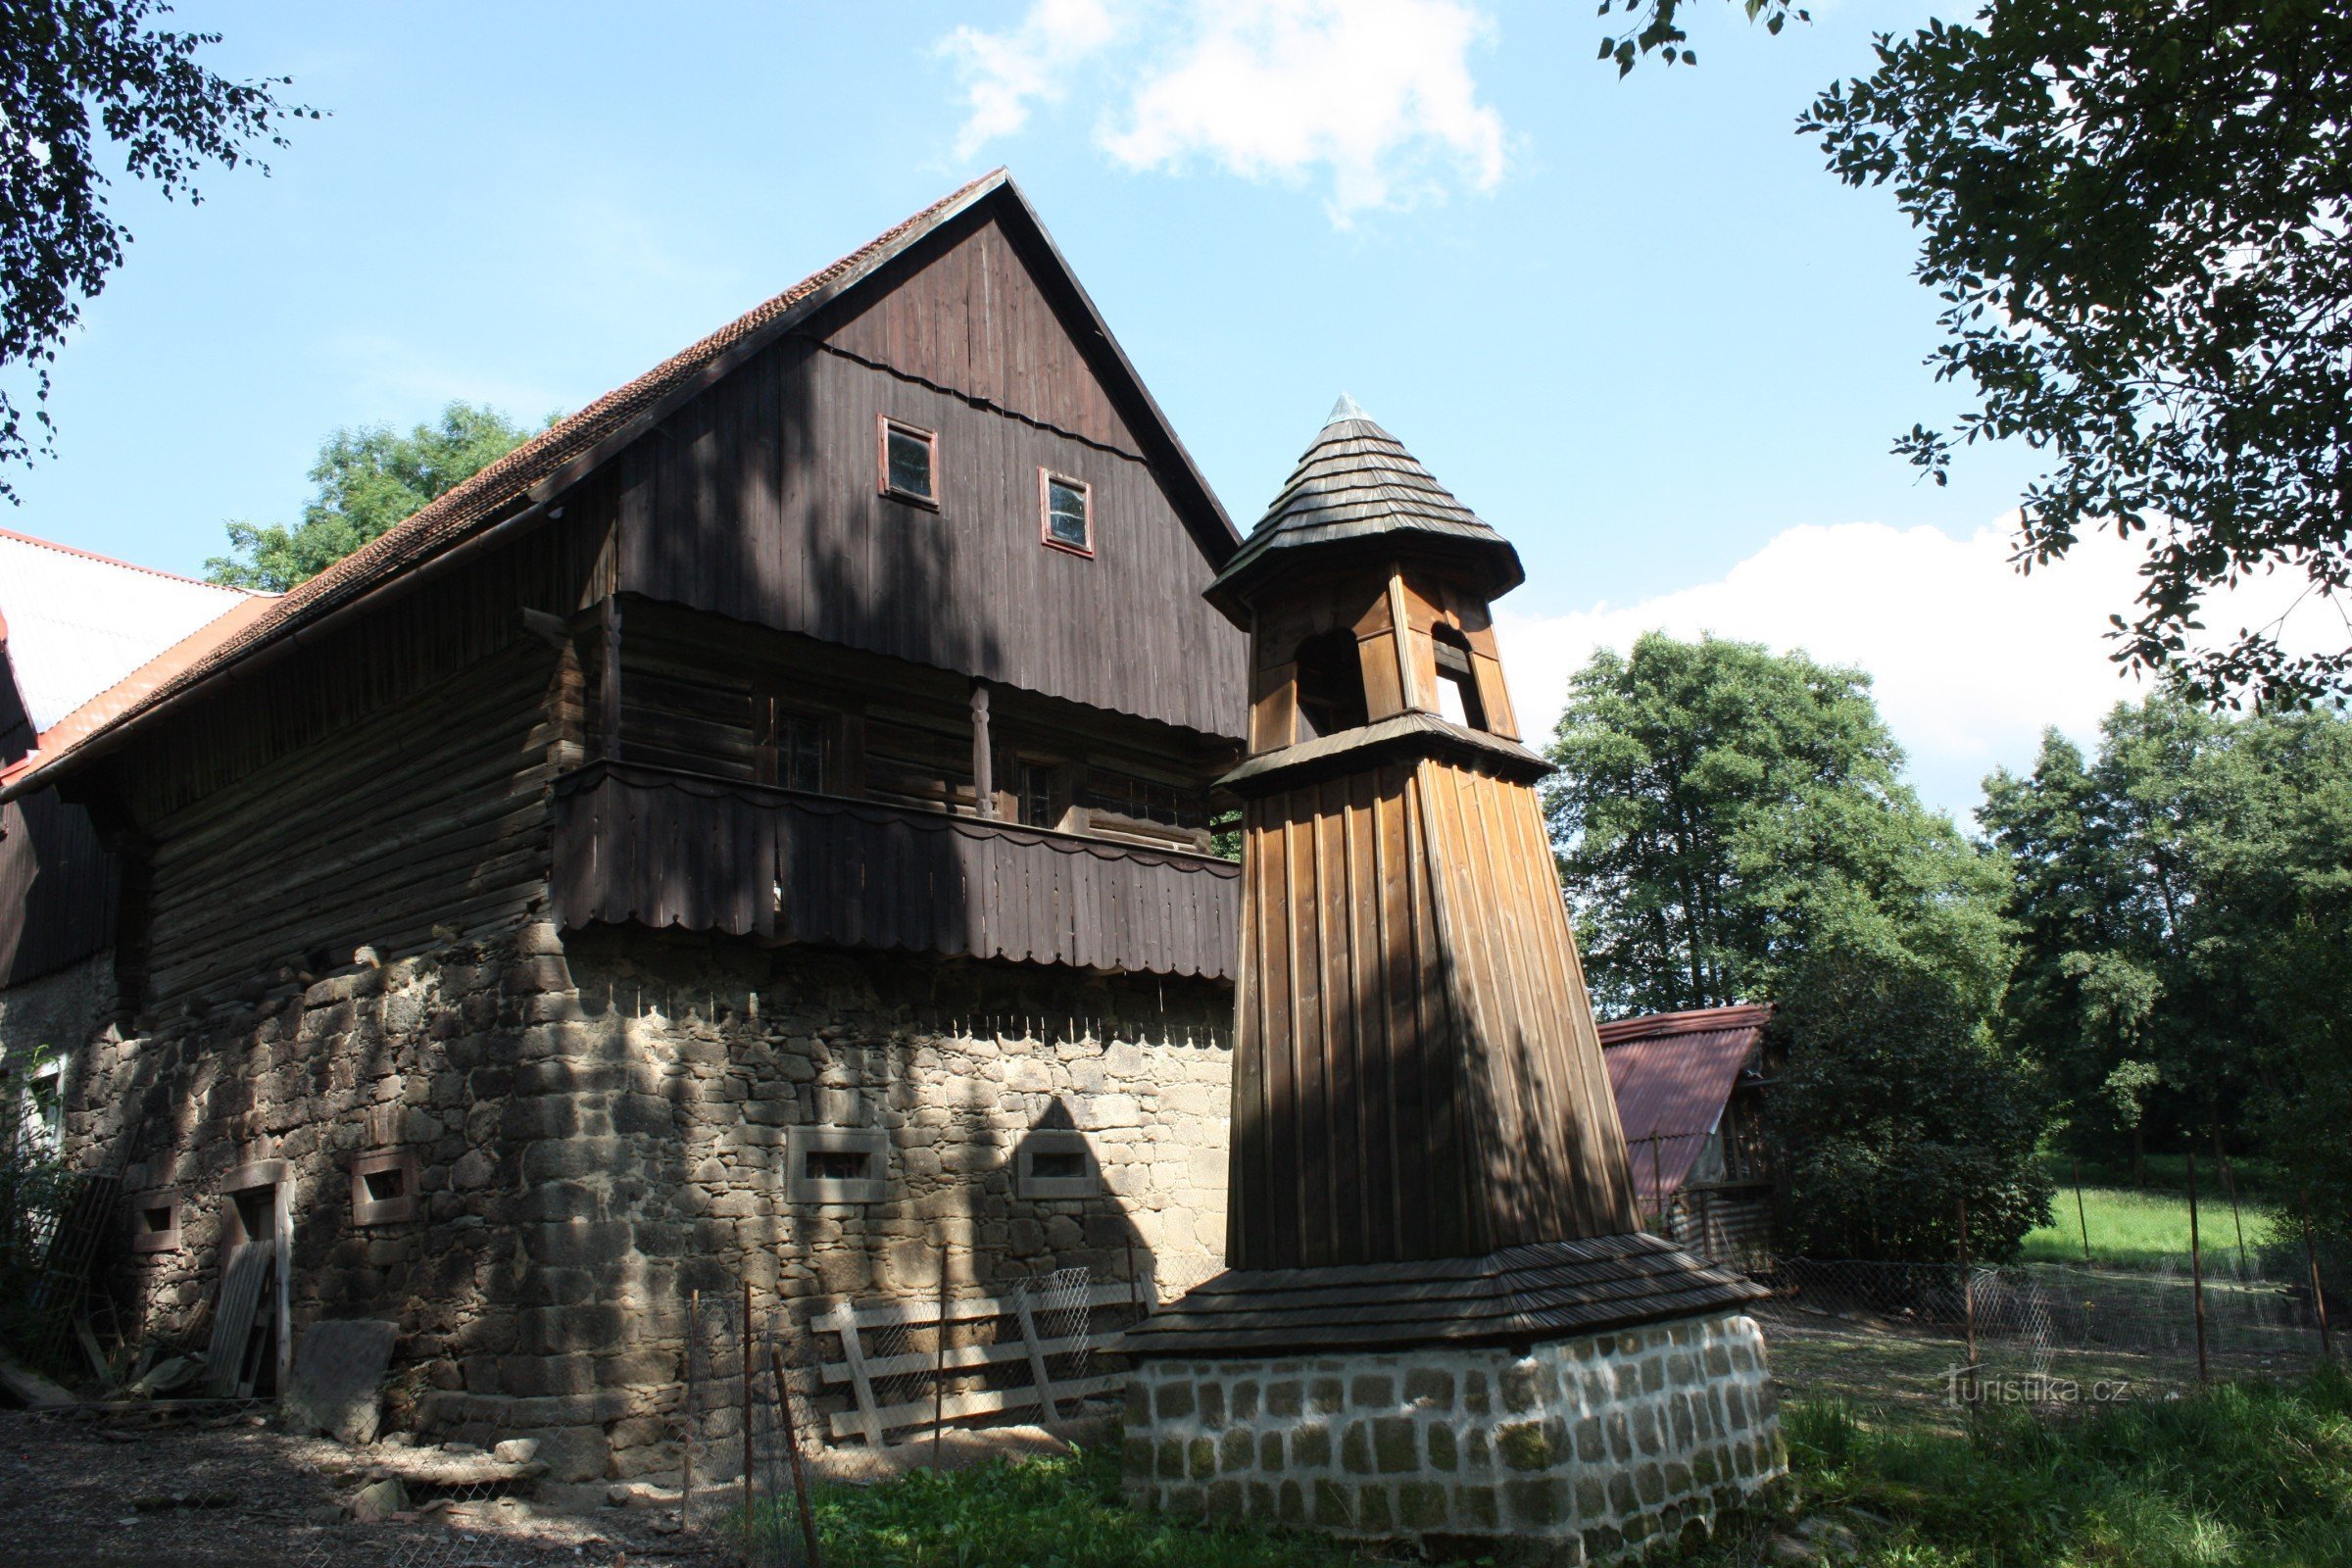 Hölzerner Glockenturm in Škodějov in der Region Semila